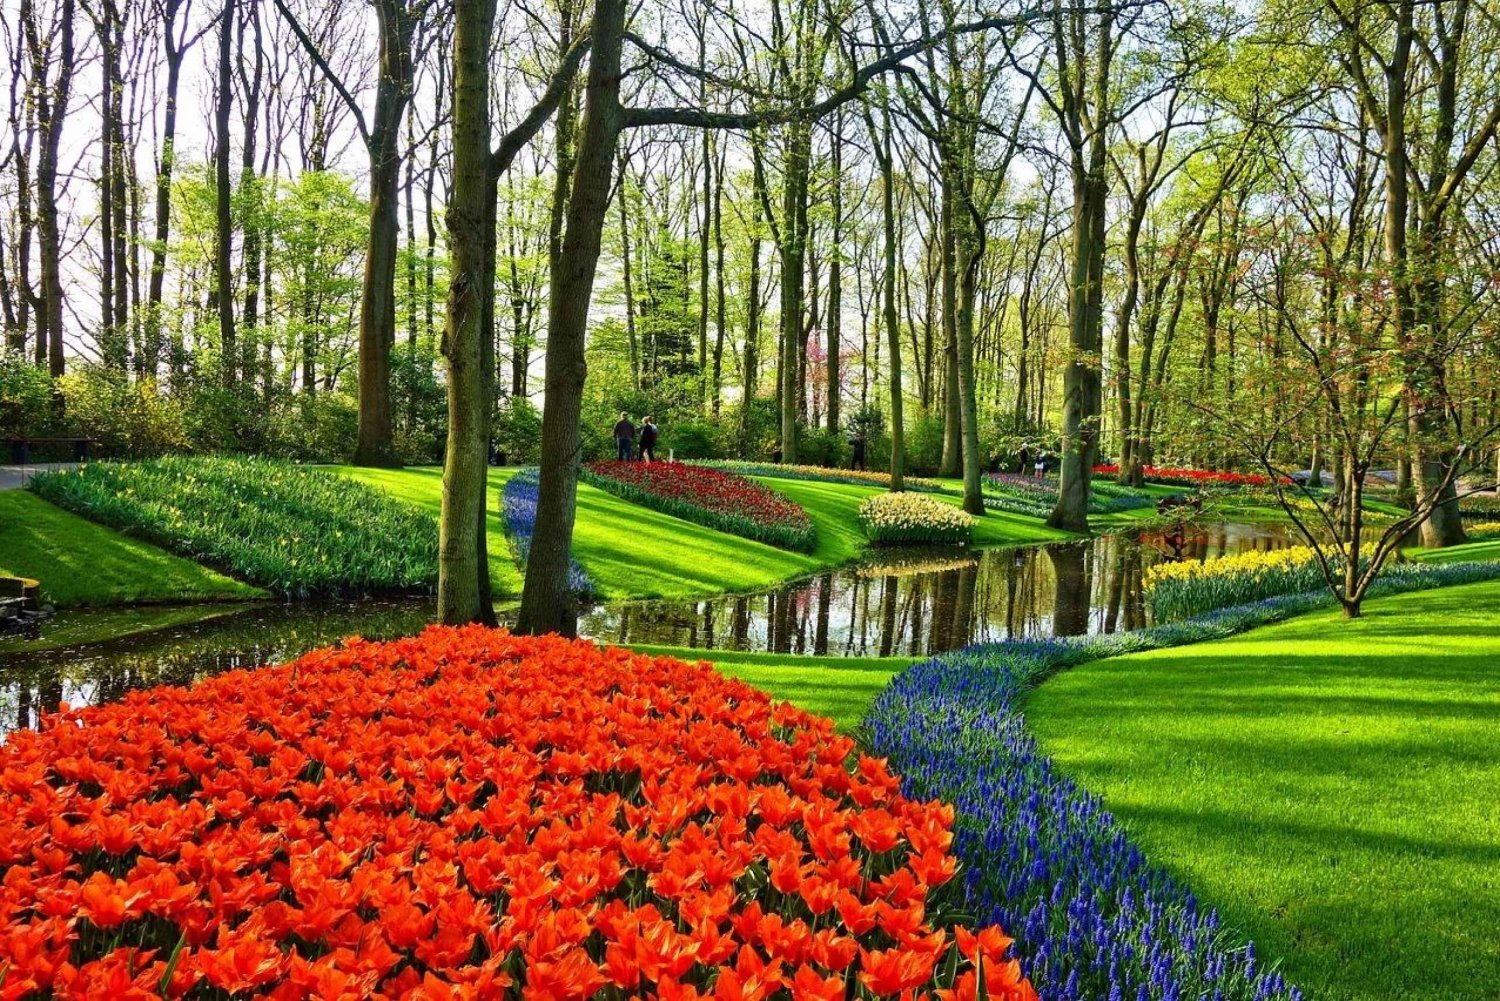 Keukenhofin puutarhat ja tulppaanikokemuskierros Amsterdamista